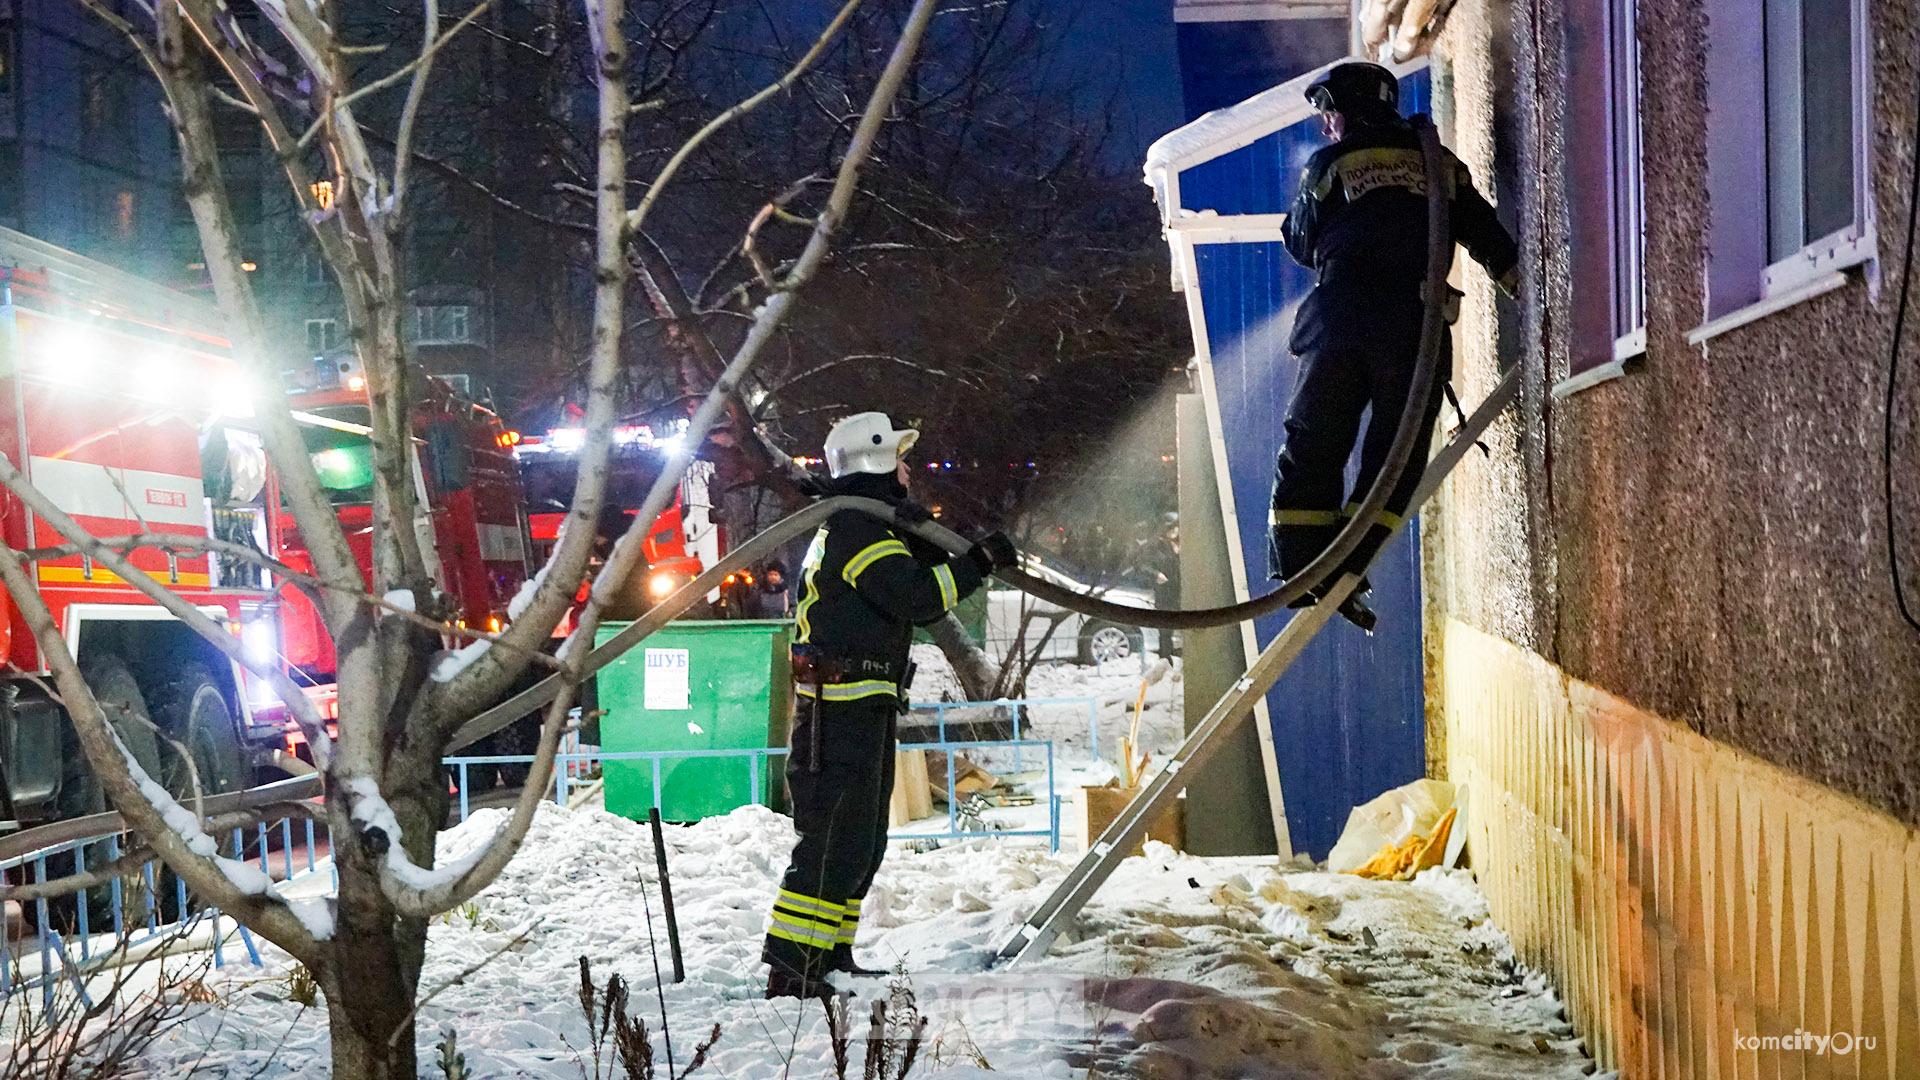 Минимум двое человек пострадало в пожаре на Московском, один из них в крайне тяжелом состоянии